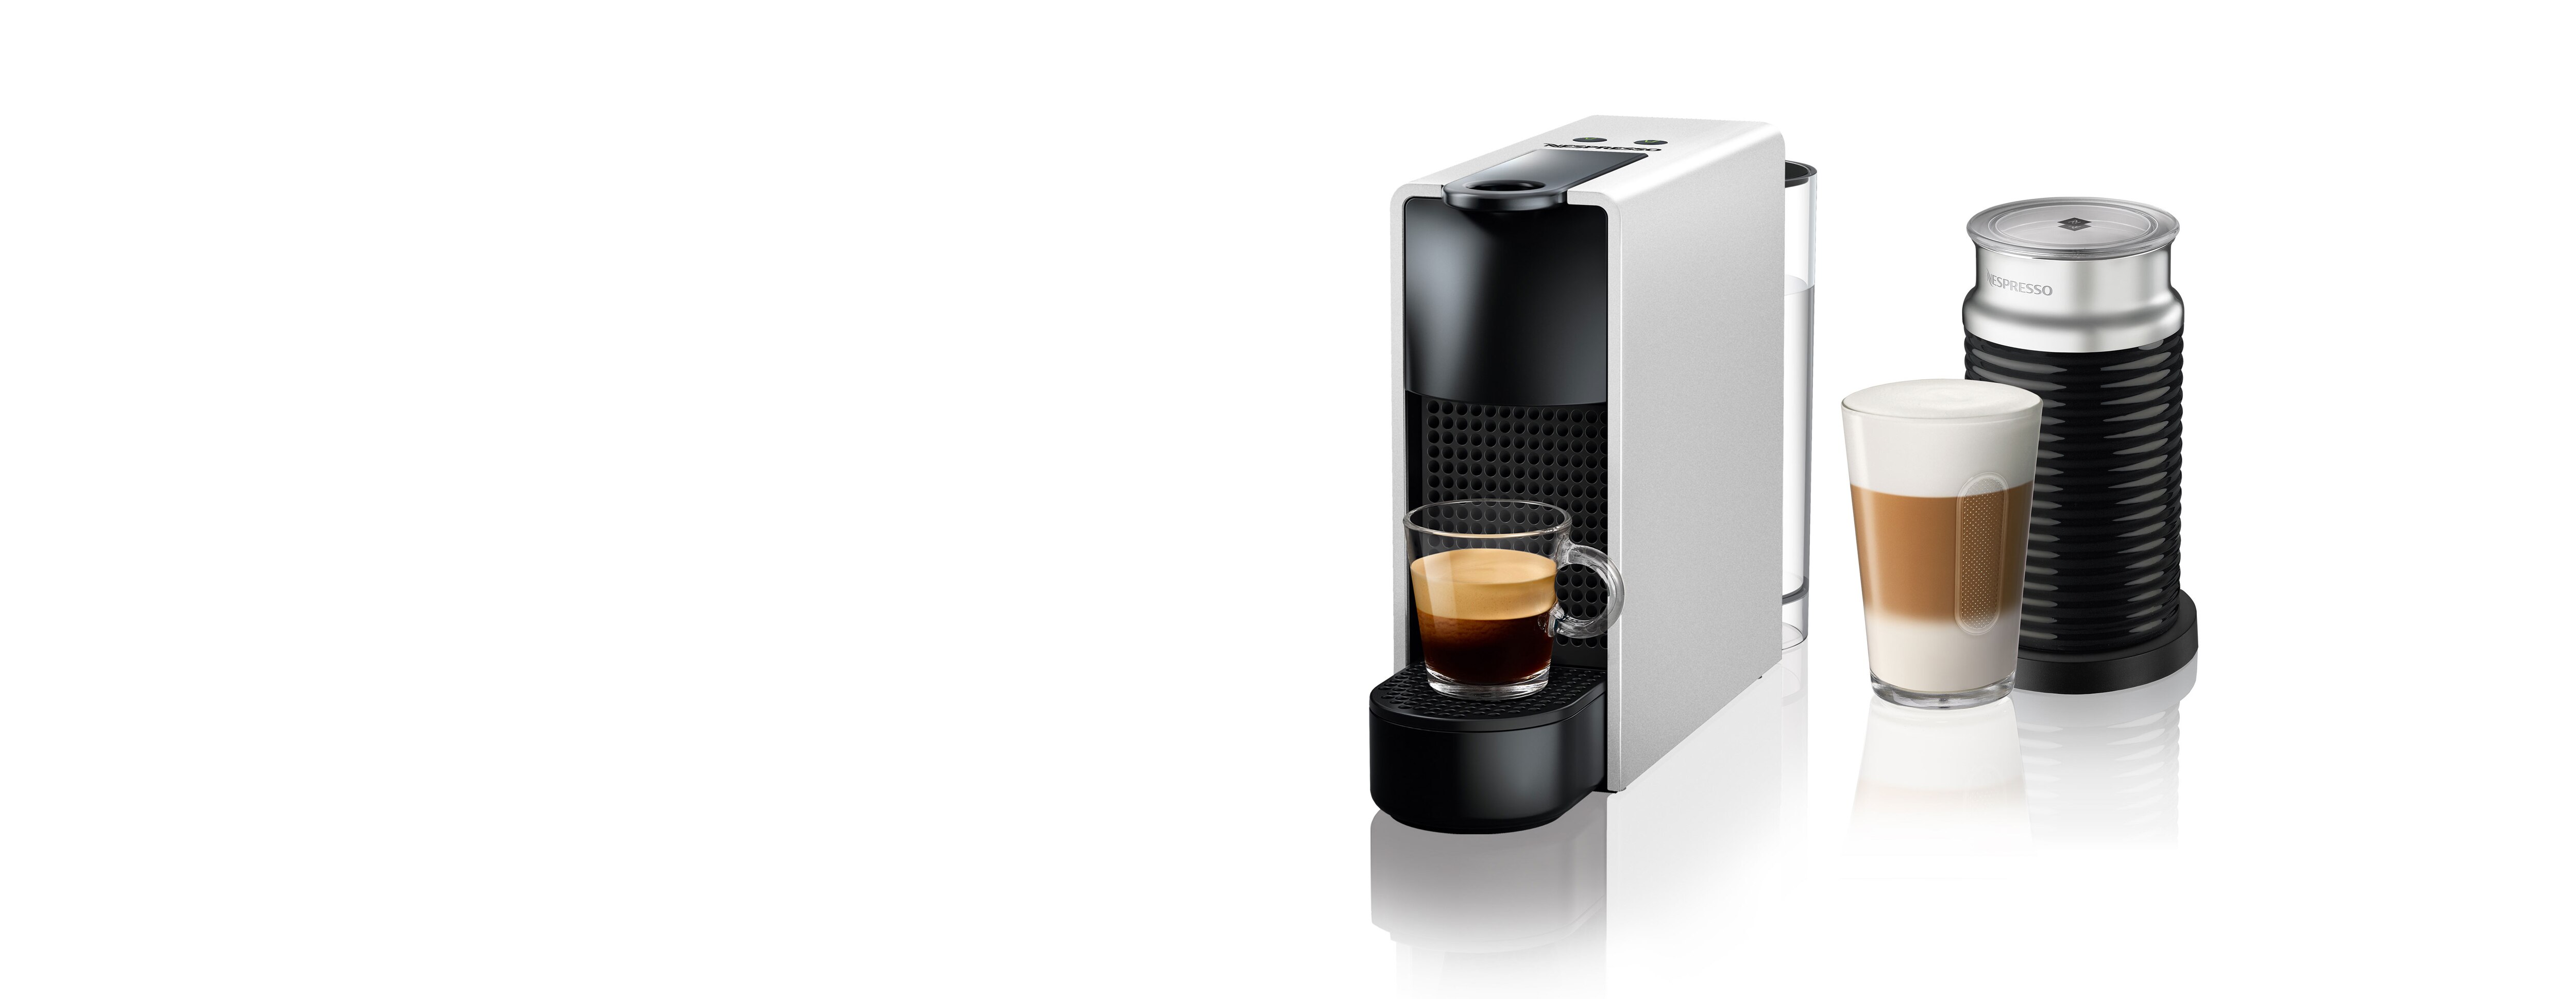 Essenza Mini C Silver & Aeroccino | Coffee machine | Nespresso